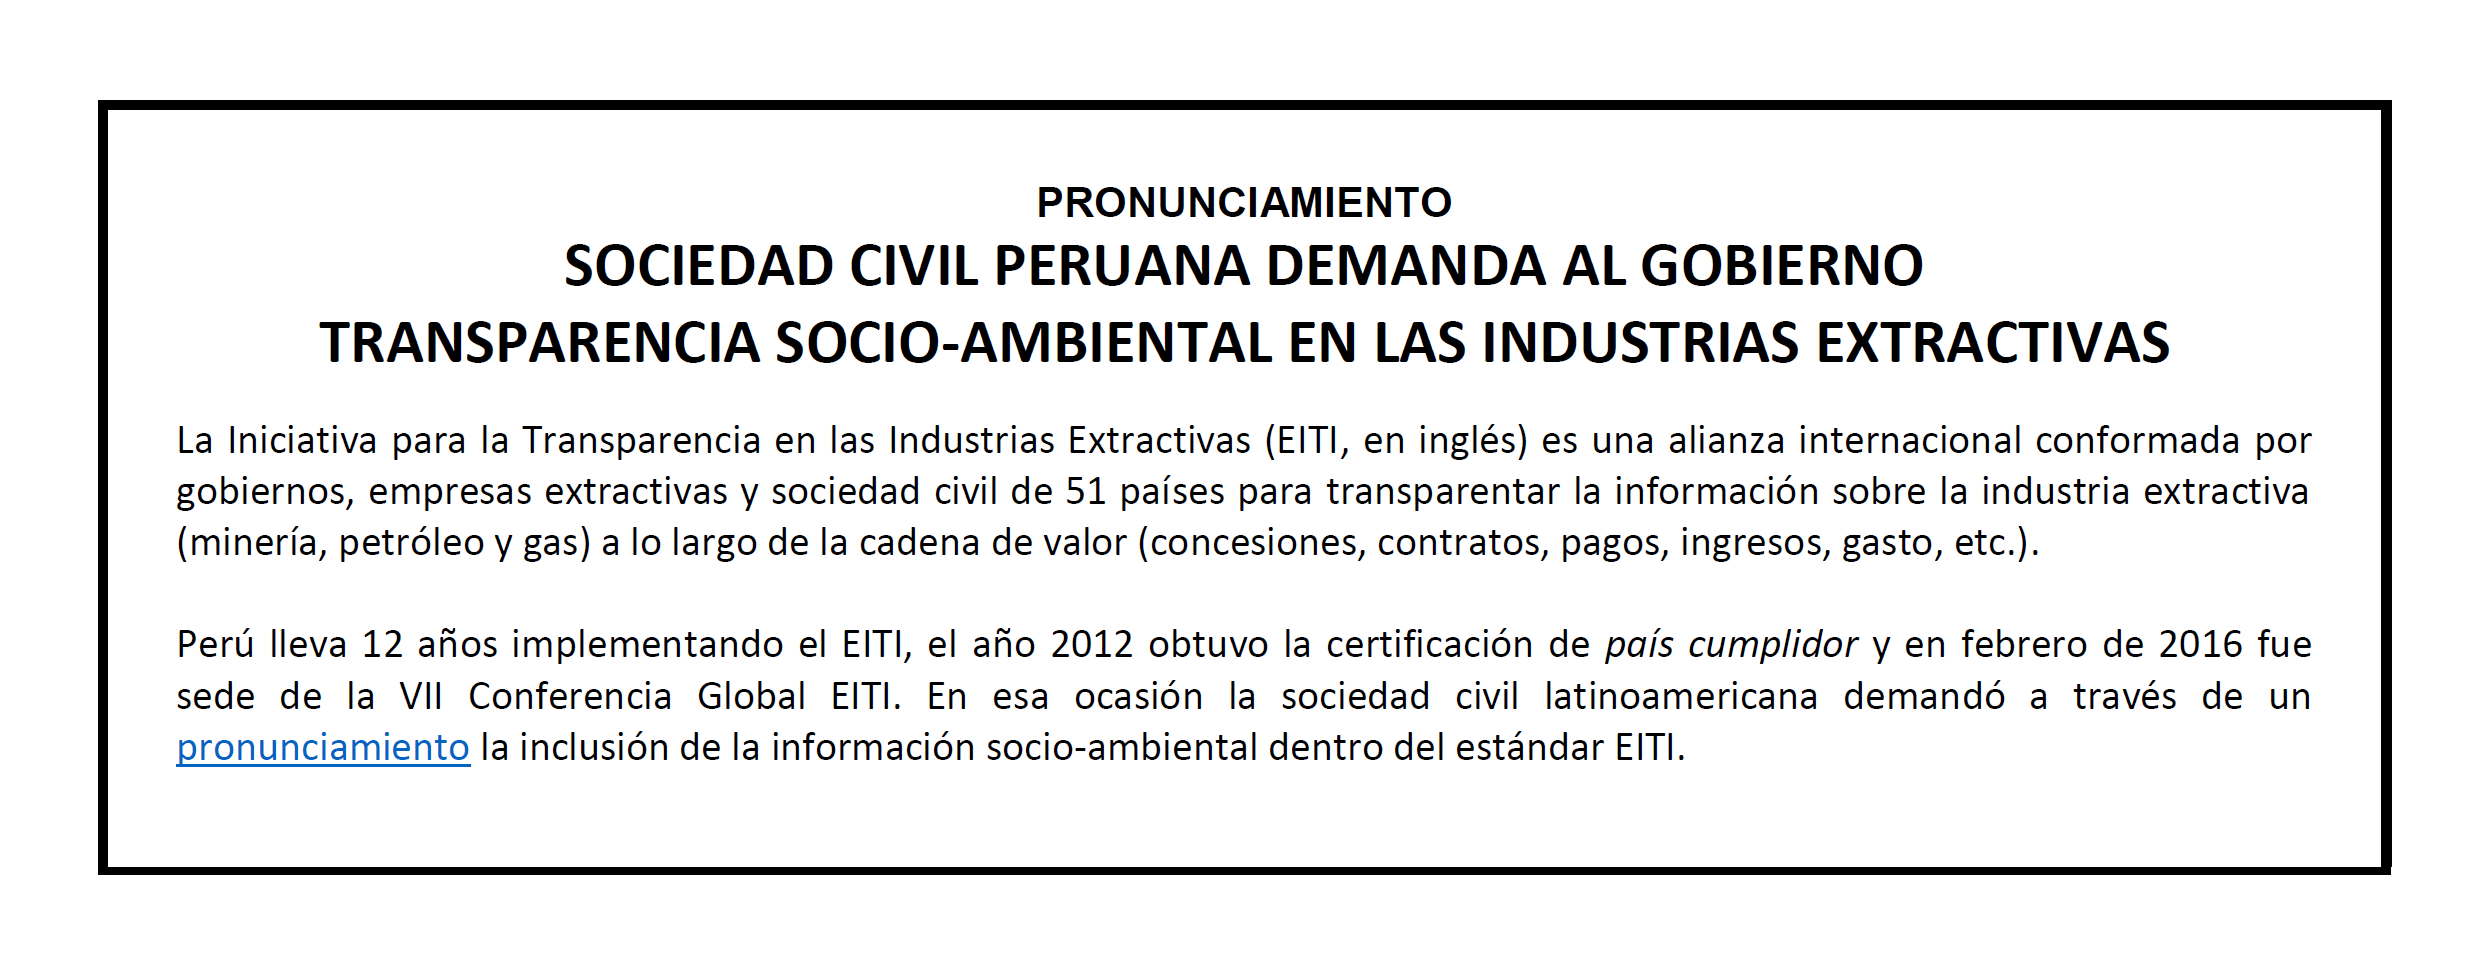 Pronunciamiento: Sociedad civil peruana demanda al Gobierno  transparencia socio-ambiental en las industrias extractivas